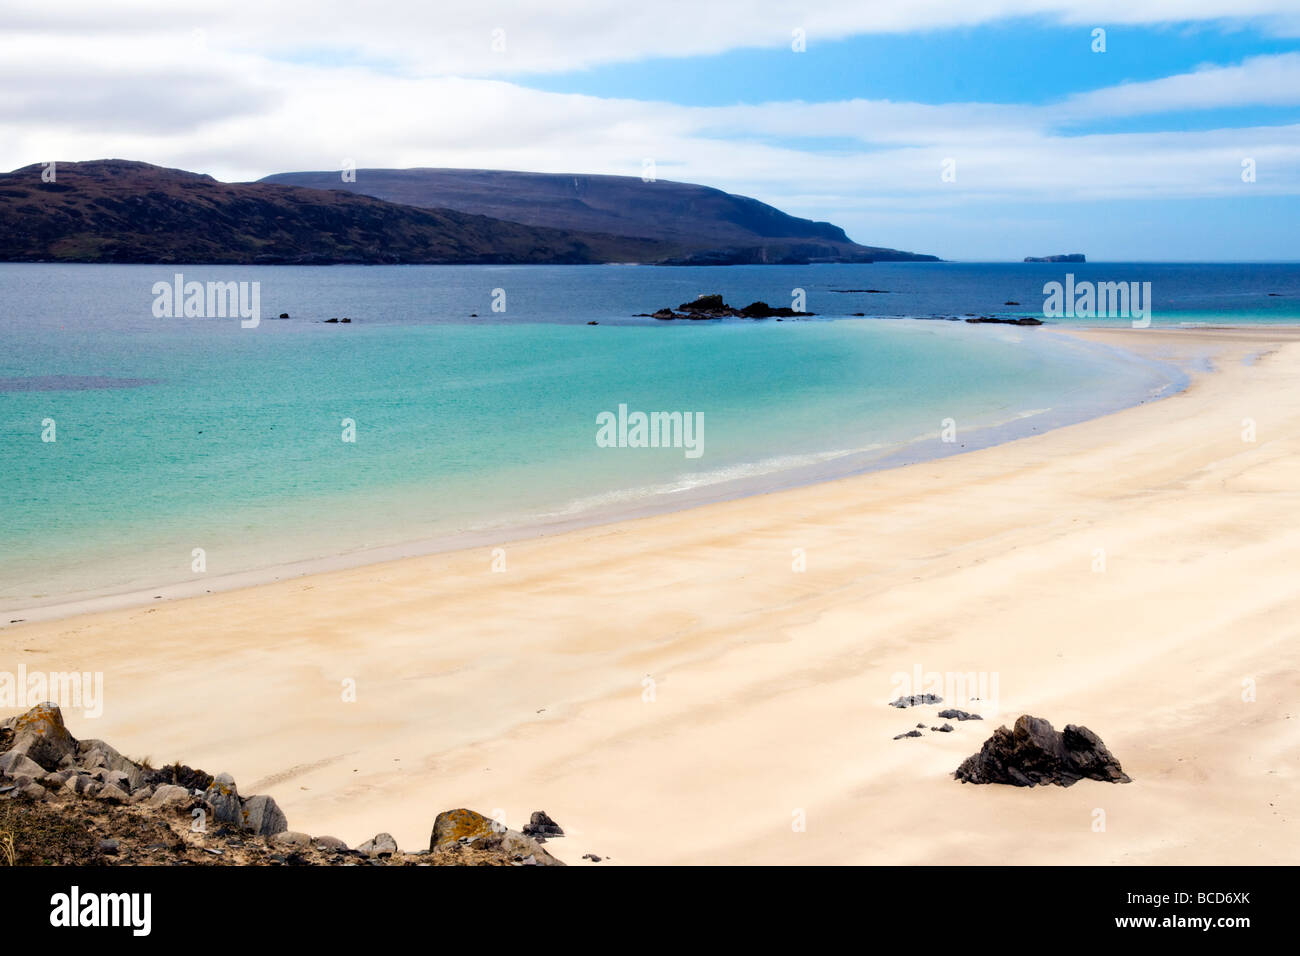 Hermosas playas de arena y la bahía de Balnakeil Bay, Durness, Sutherland en Escocia mirando hacia Cape Wrath Foto de stock